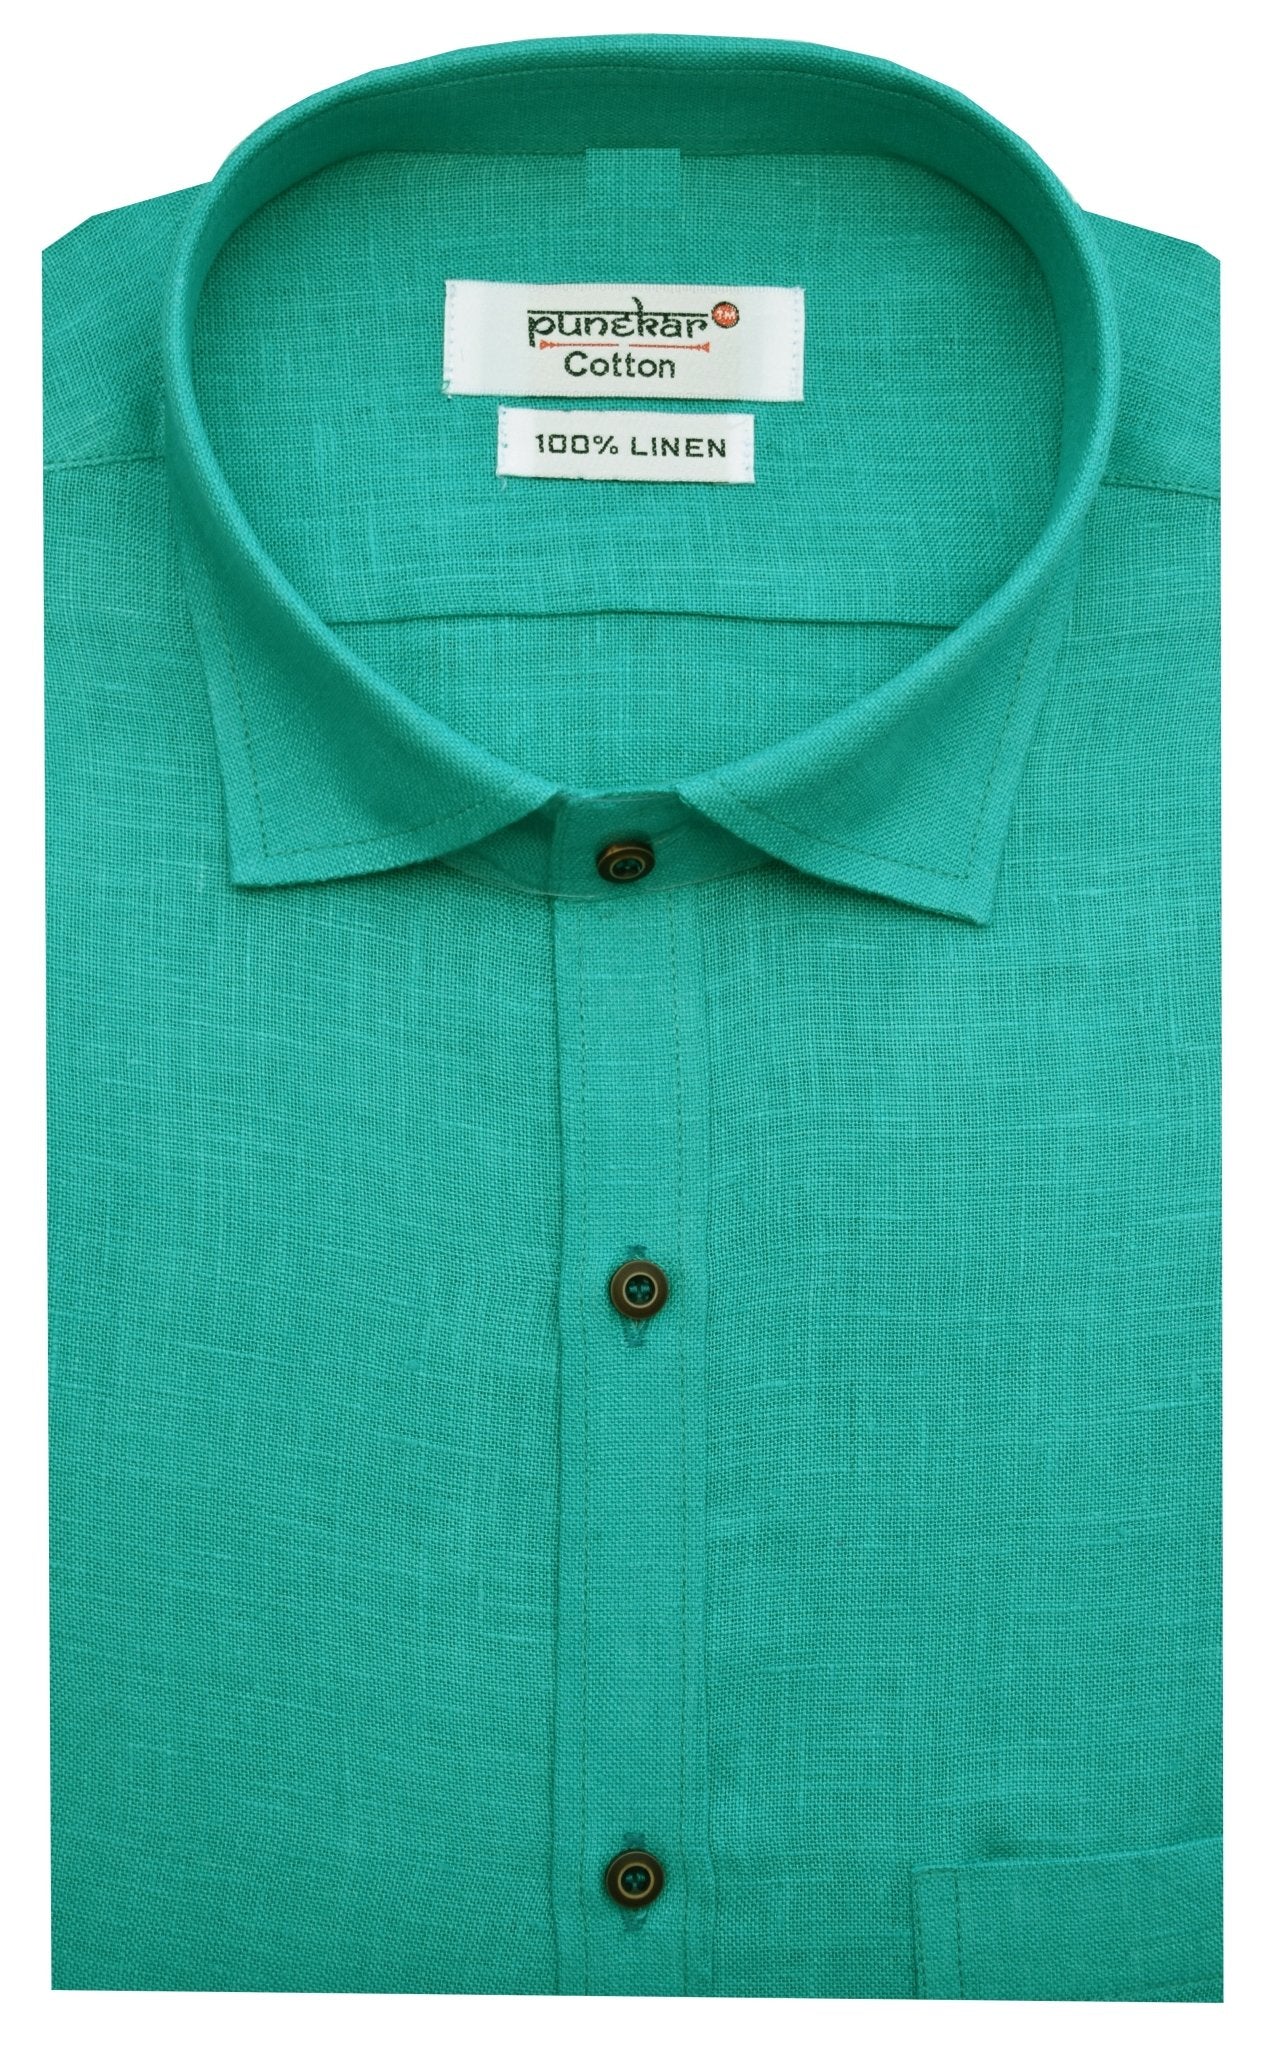 Punekar Cotton Green Color Formal Linen shirts for Men's - Punekar Cotton